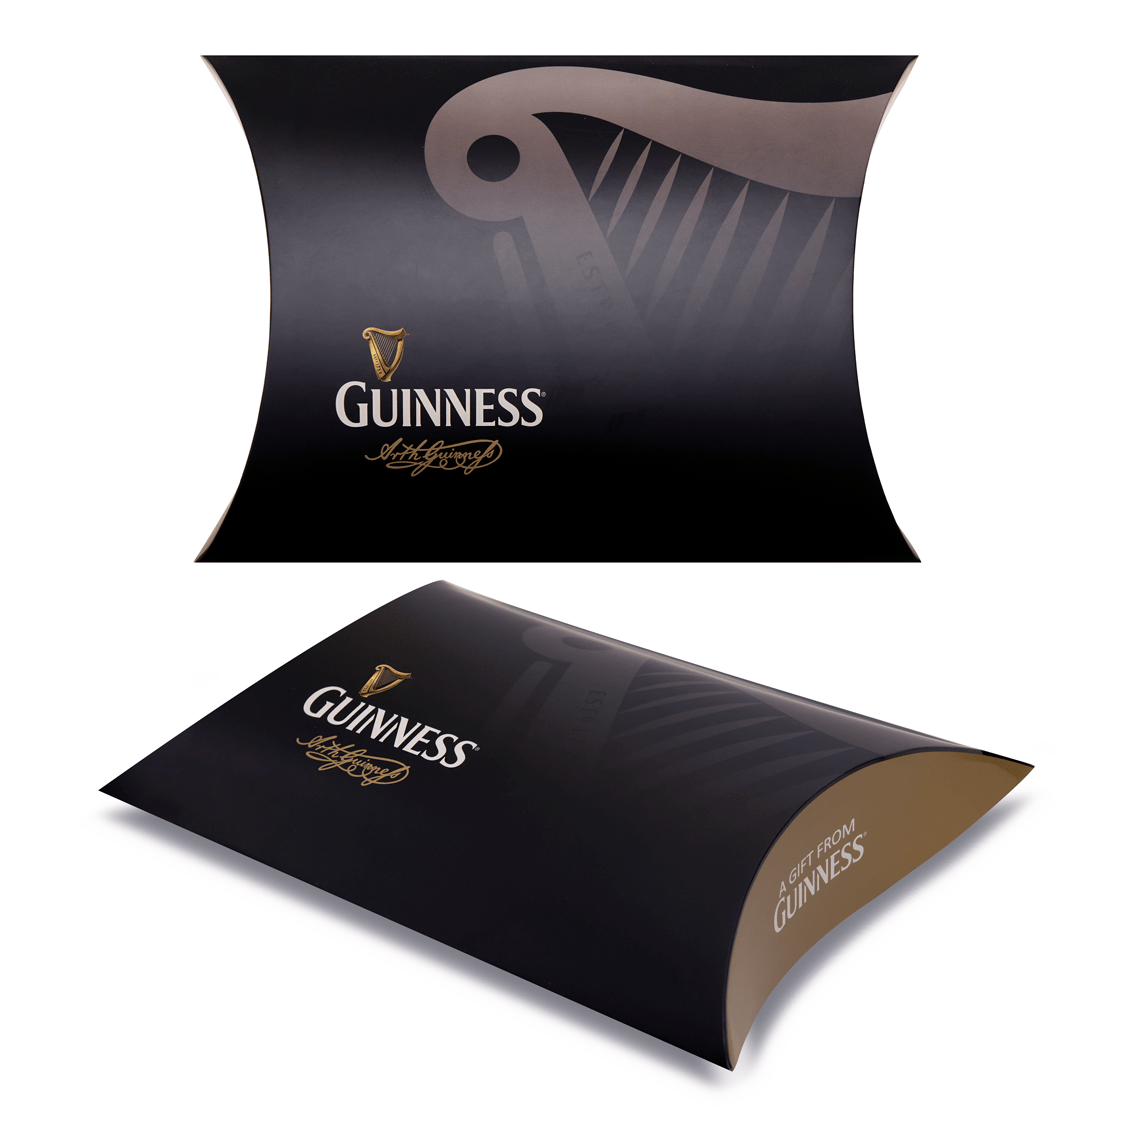 Guinness Indulgence Gift Box packaging design.